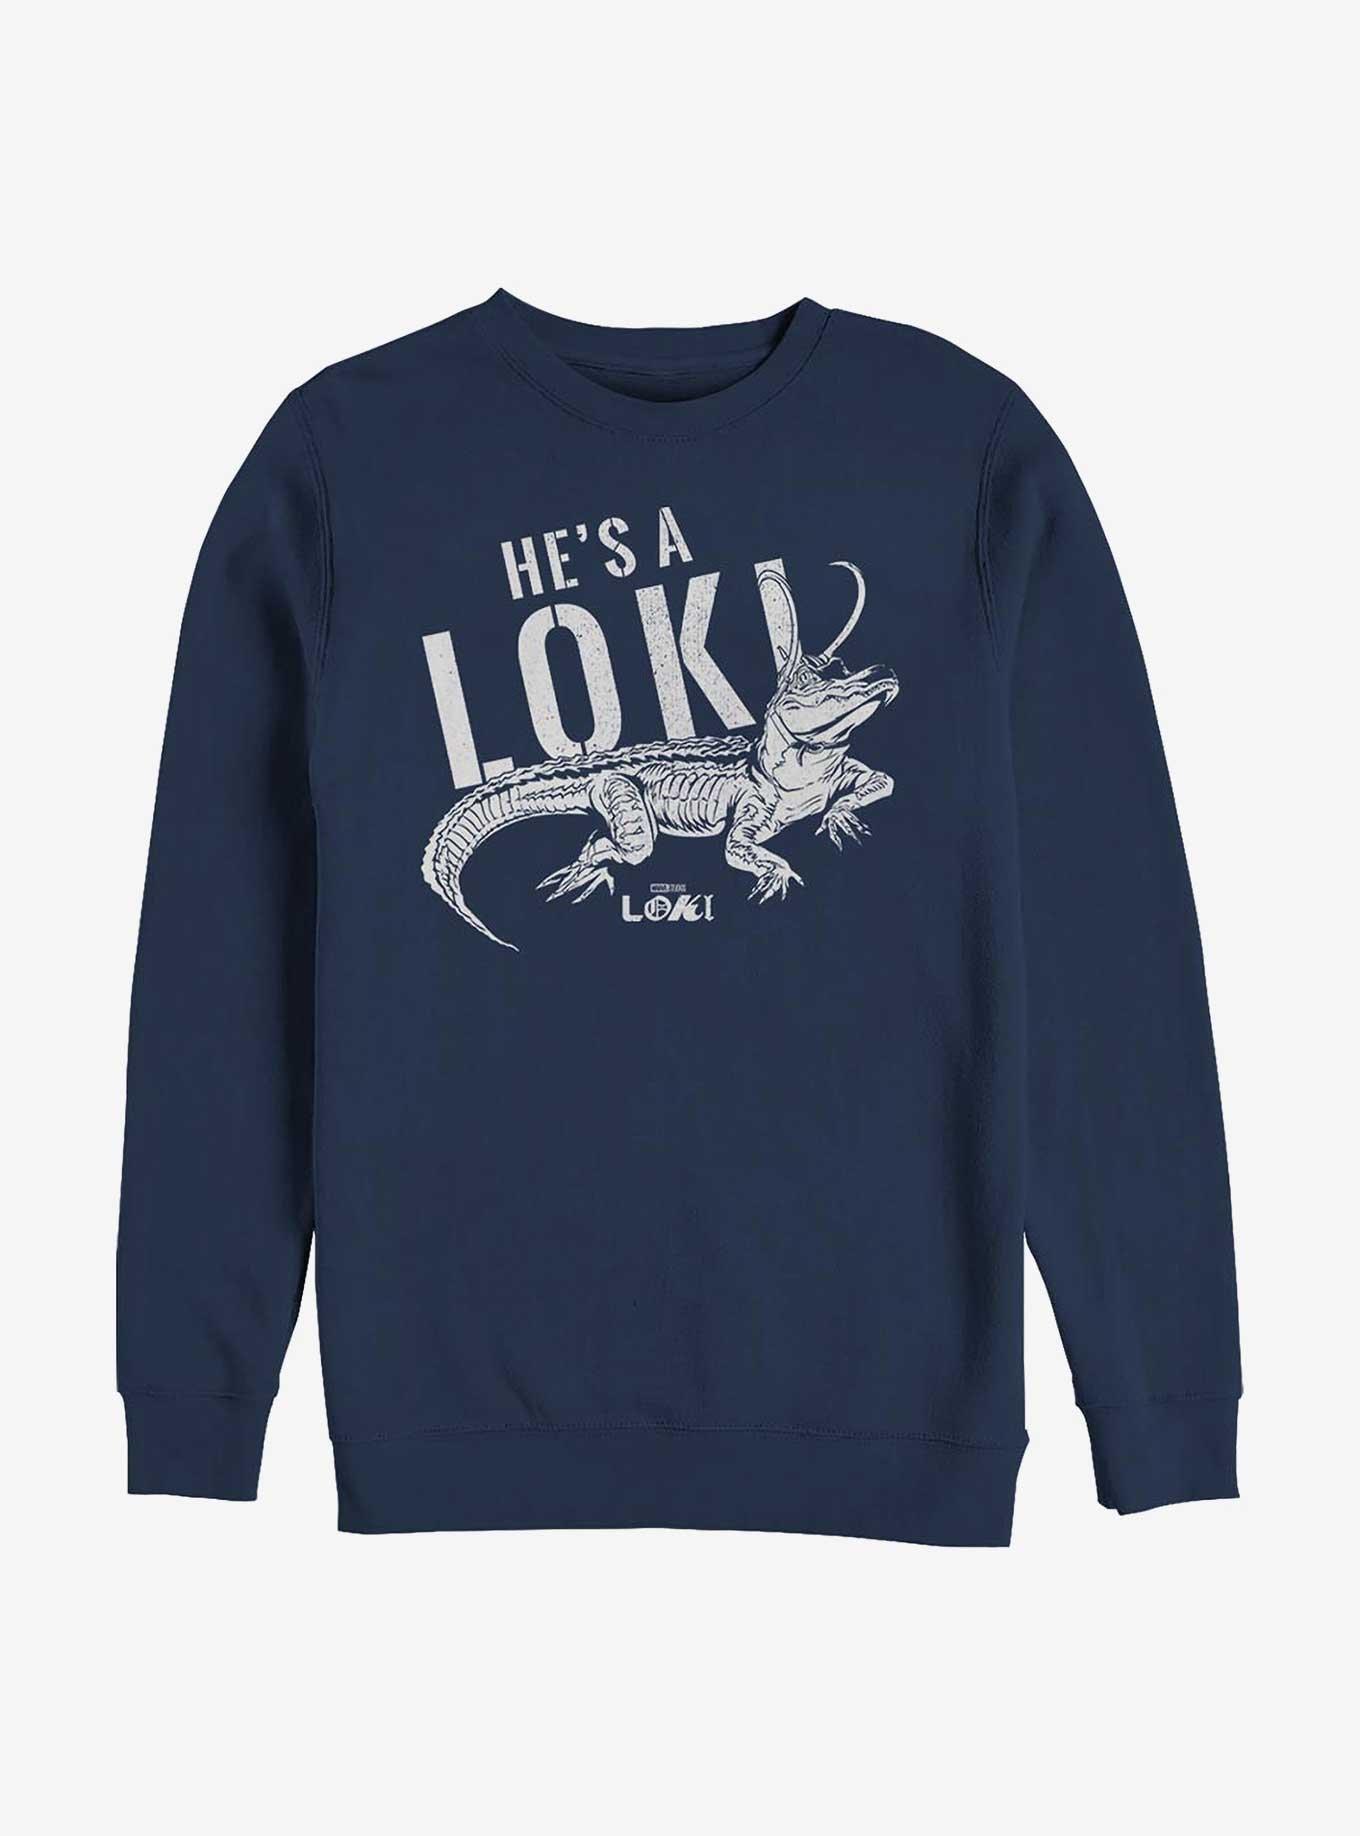 Marvel Loki Alligator Variant Sweatshirt, NAVY, hi-res